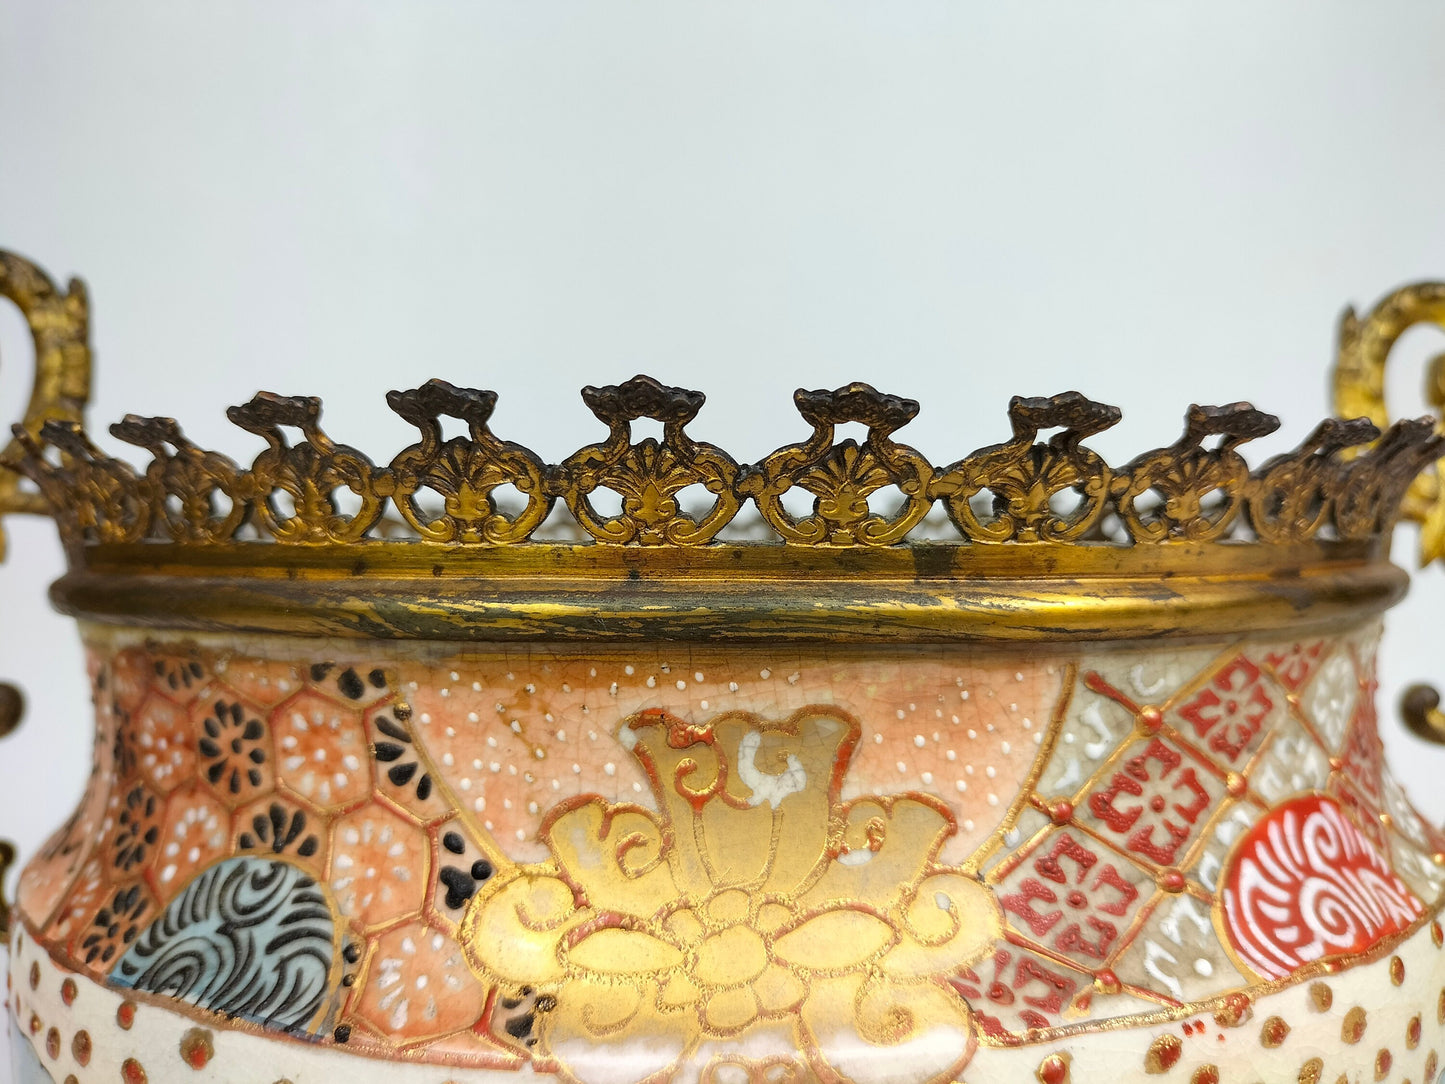 مزهرية ساتسوما اليابانية العتيقة المُثبتة بالنحاس المذهّب // فترة ميجي - القرن التاسع عشر